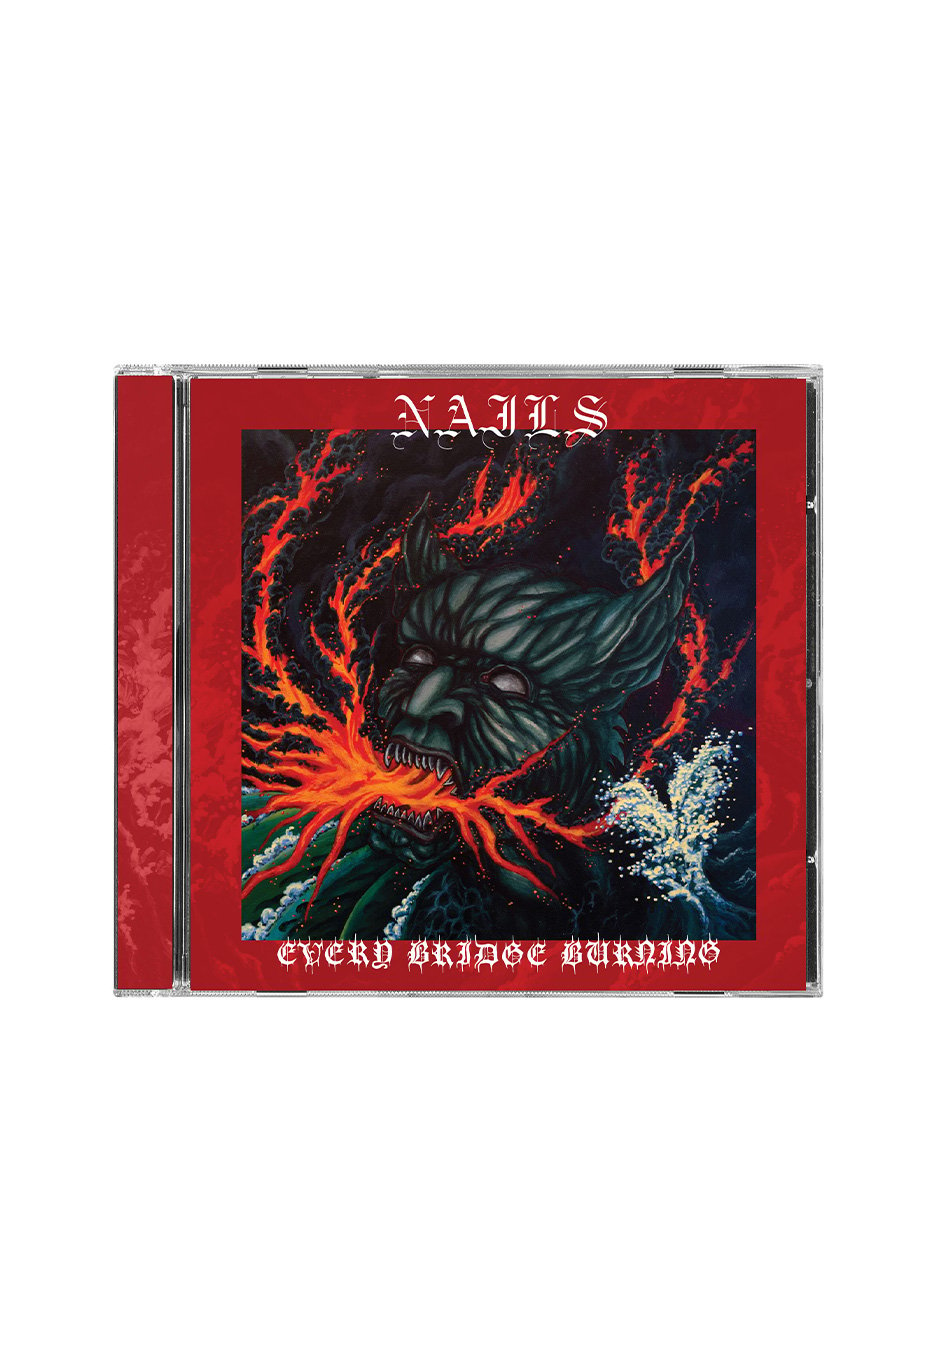 Nails - Every Bridge Burning - CD | Neutral-Image